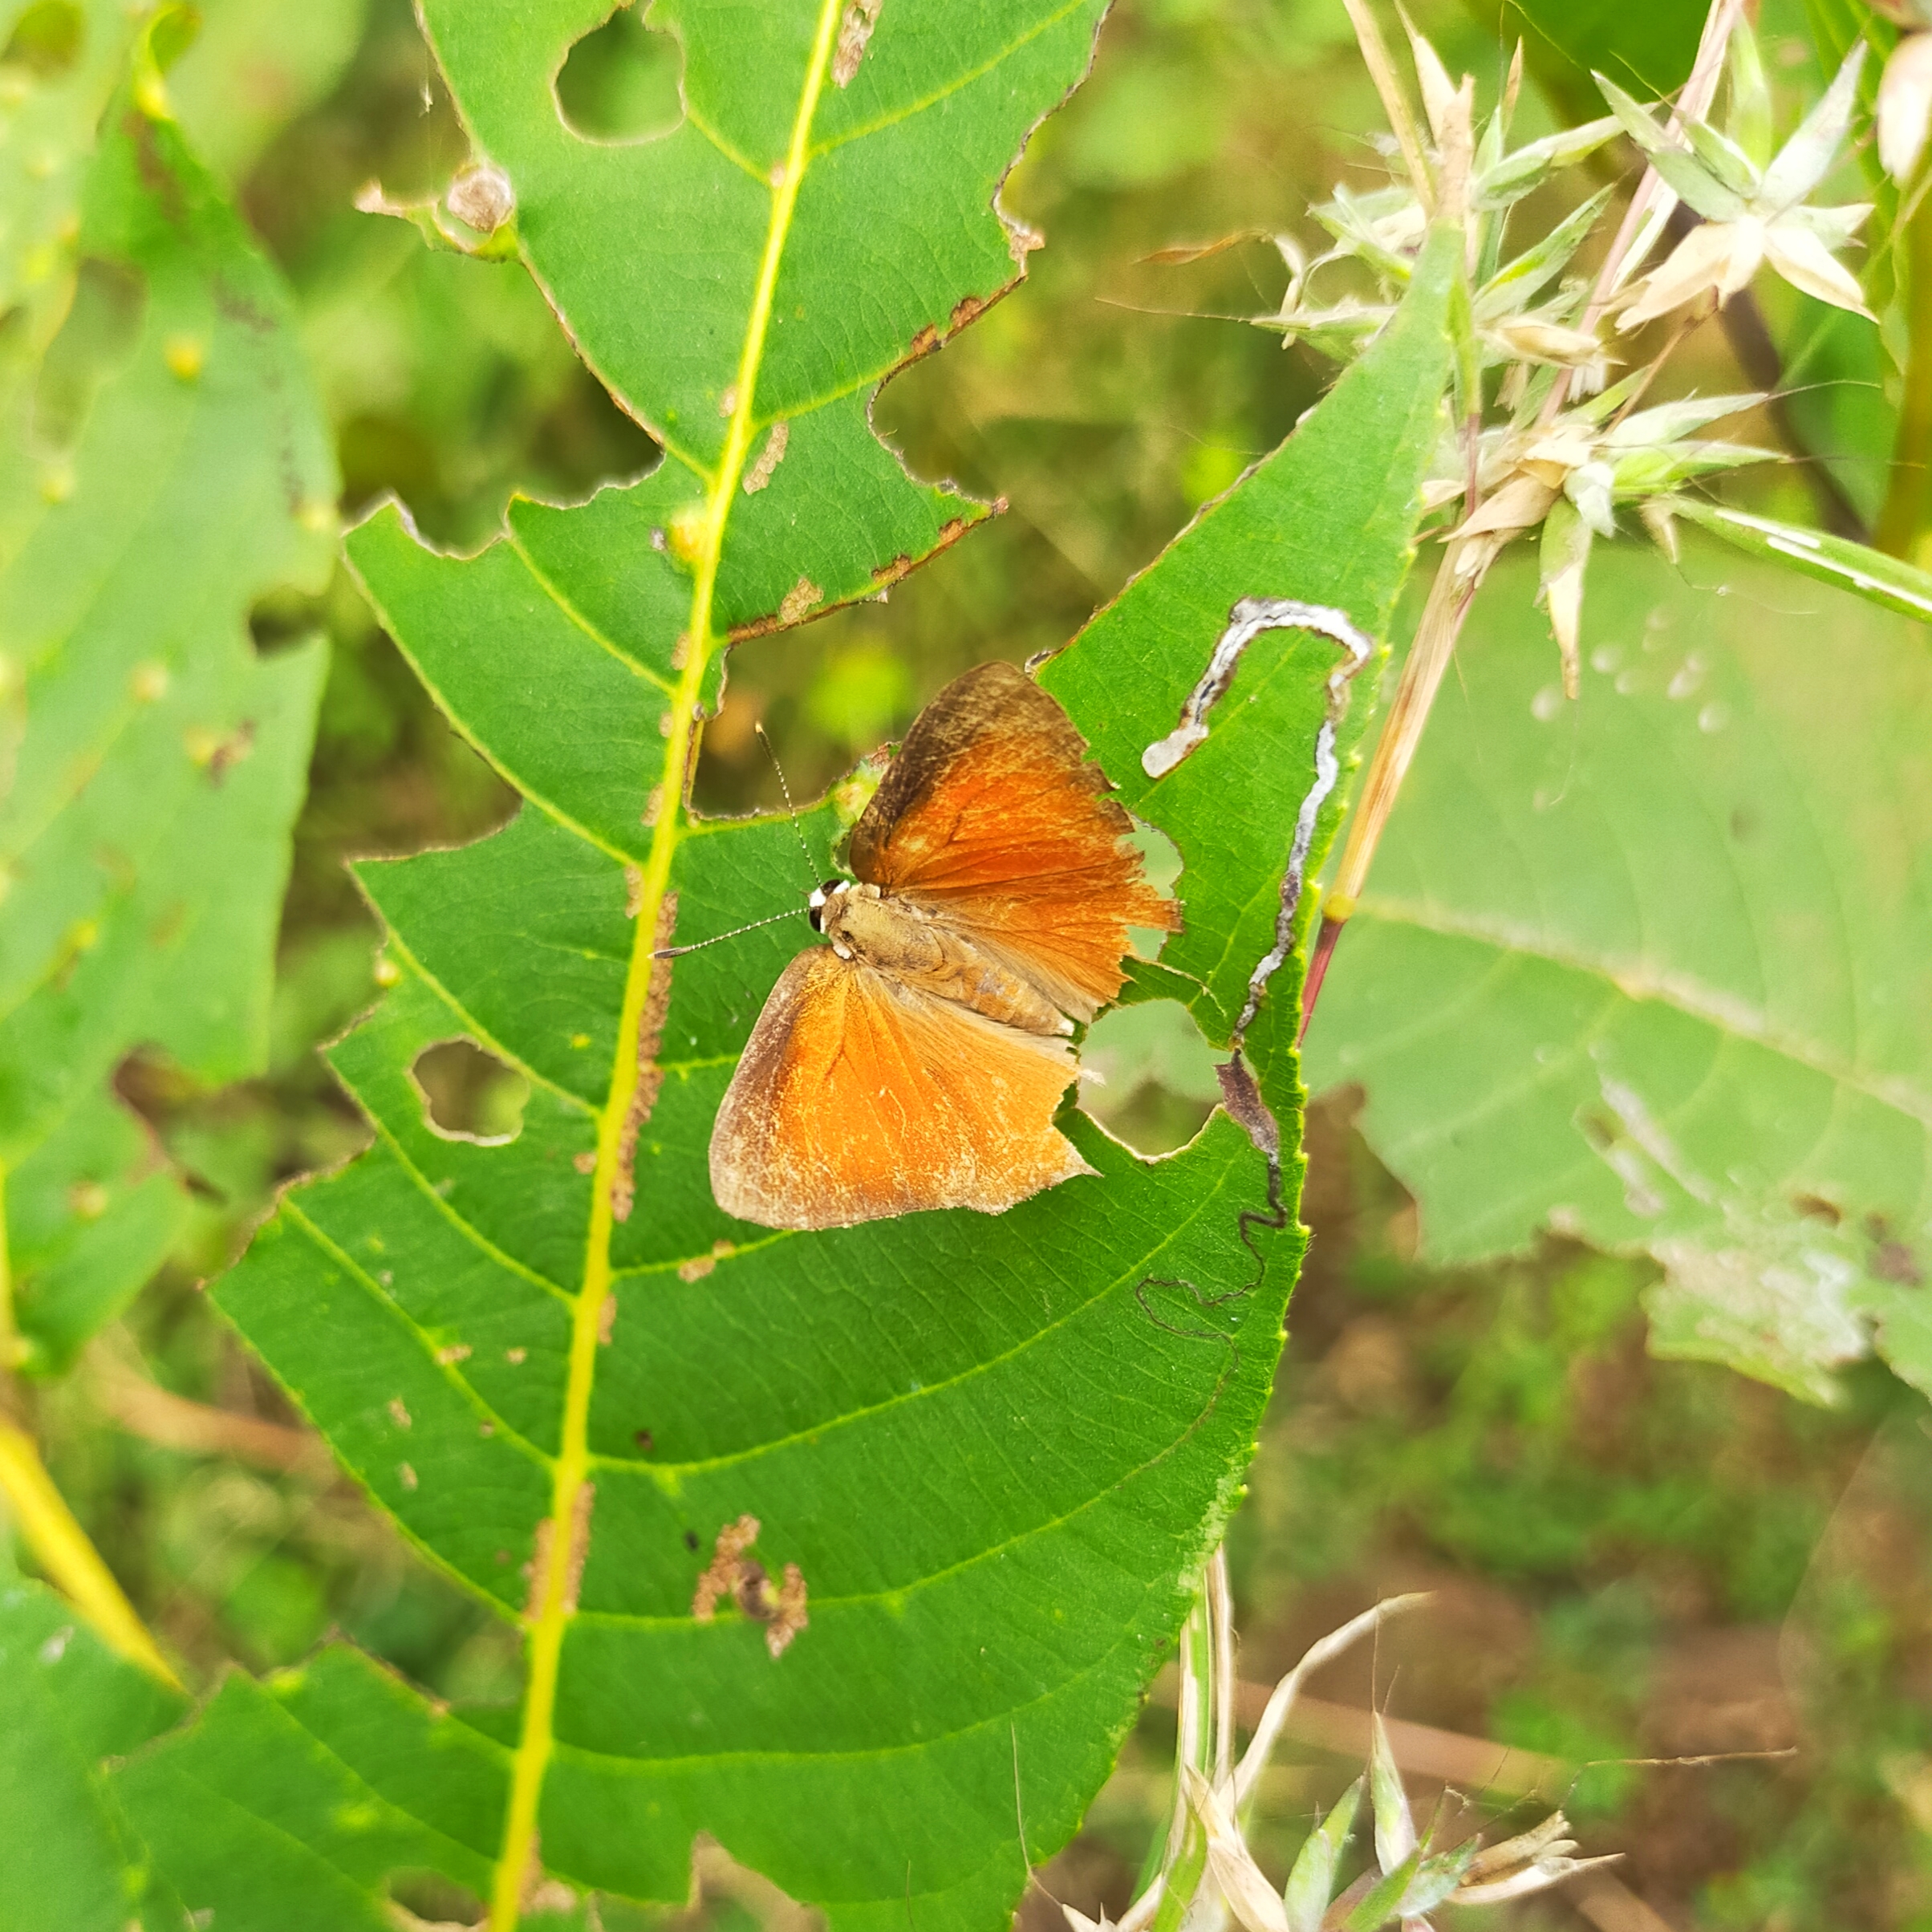 Moth on leaf